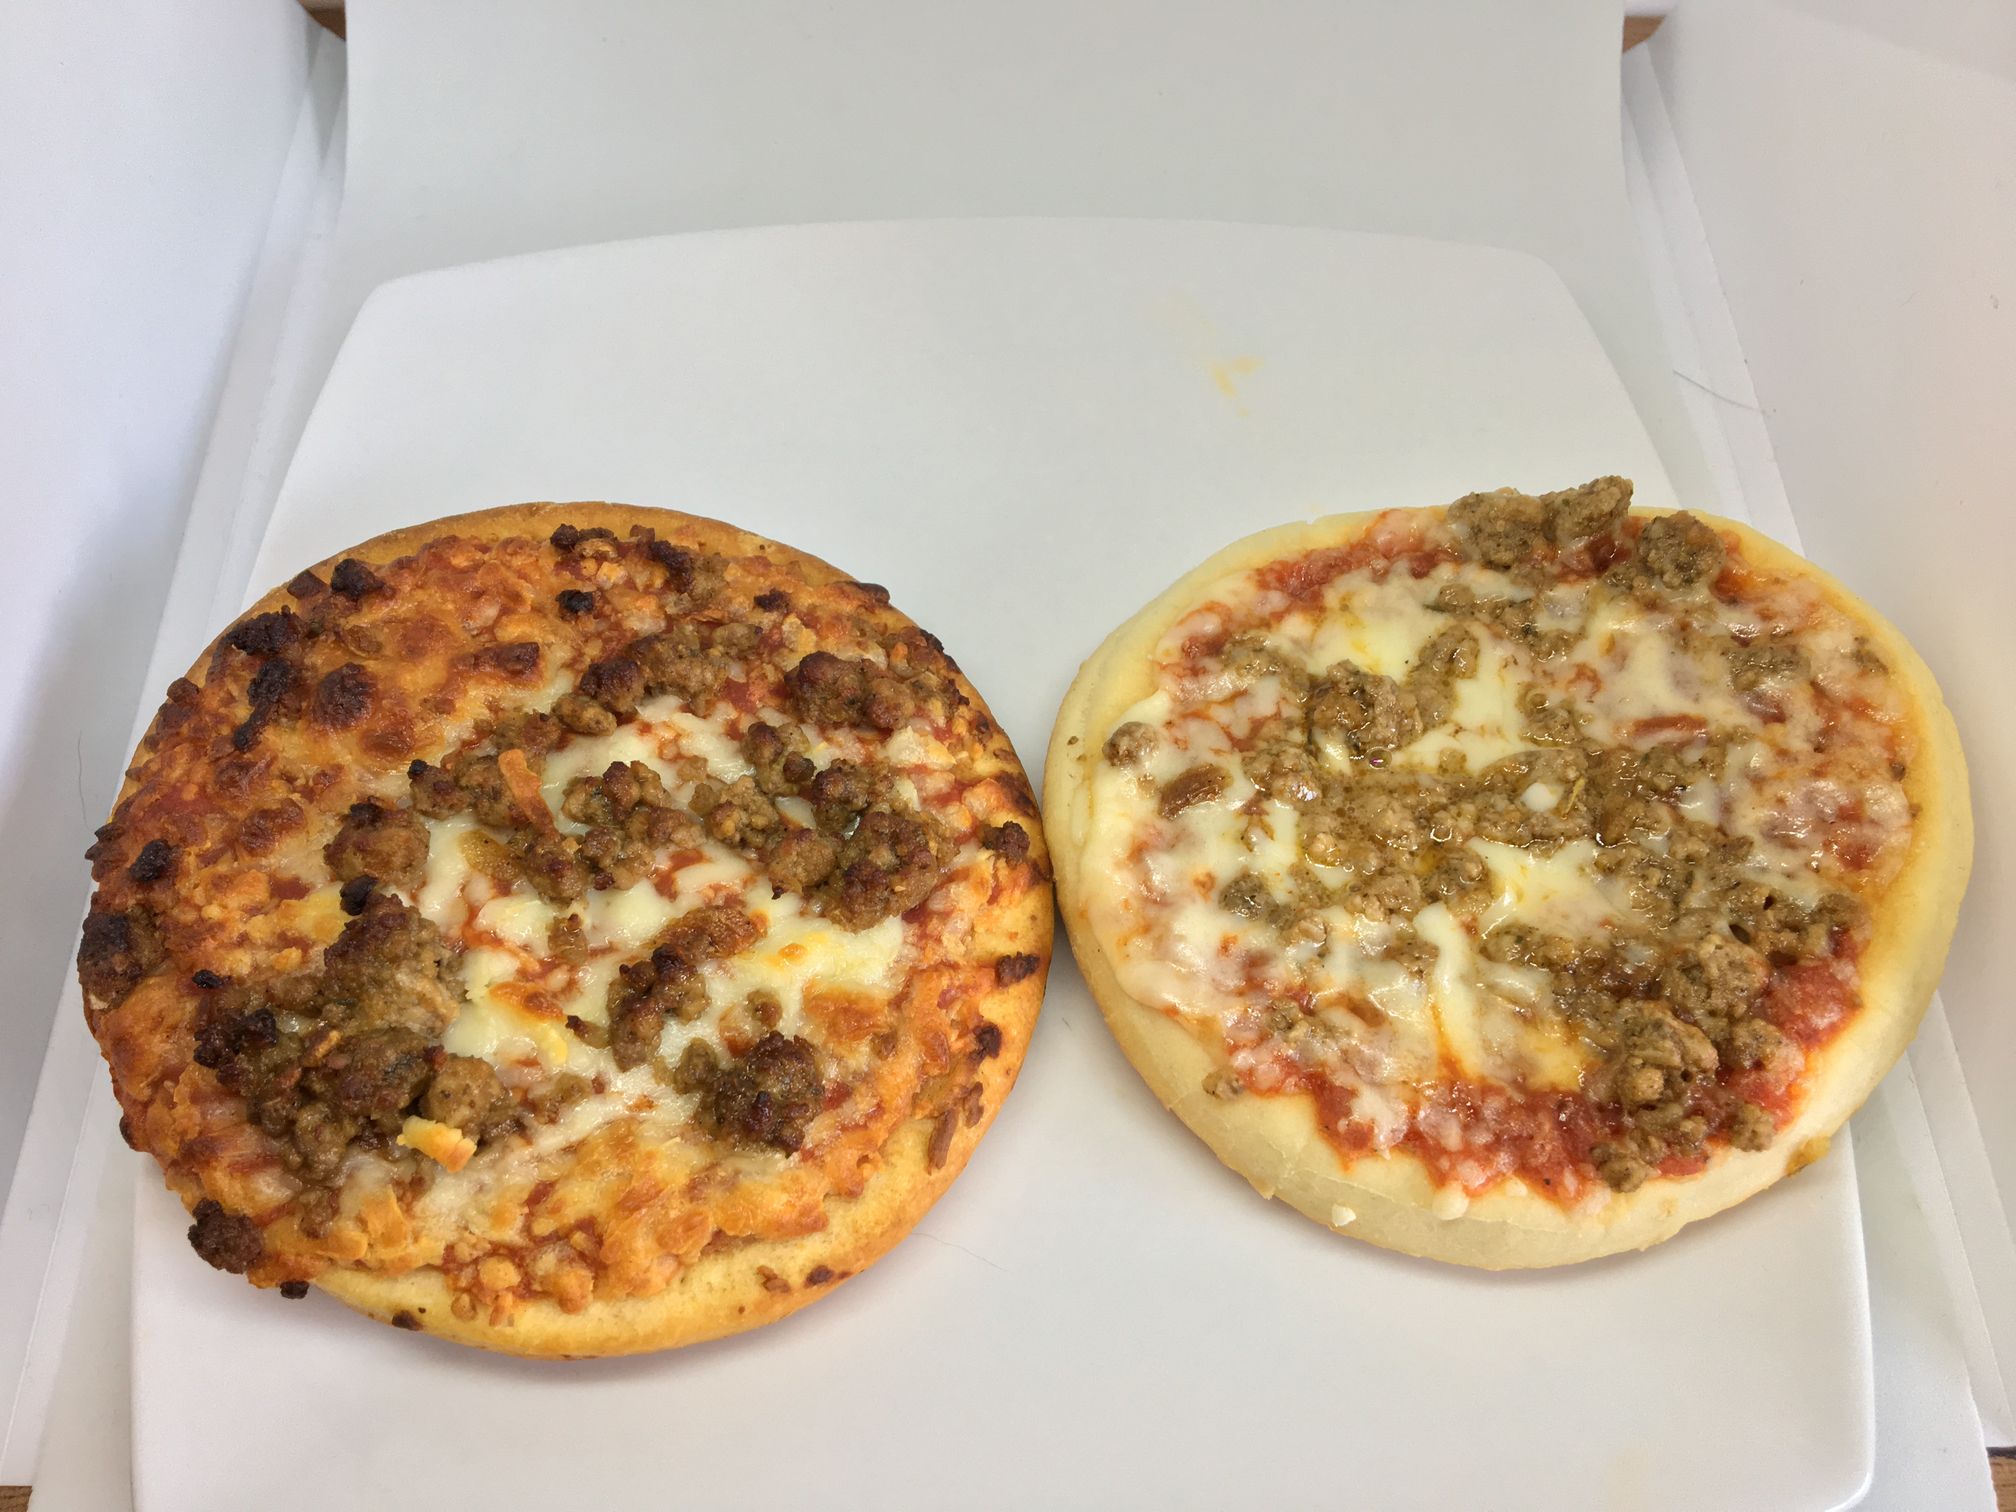 Tesco Bolognese Pizza Burgers